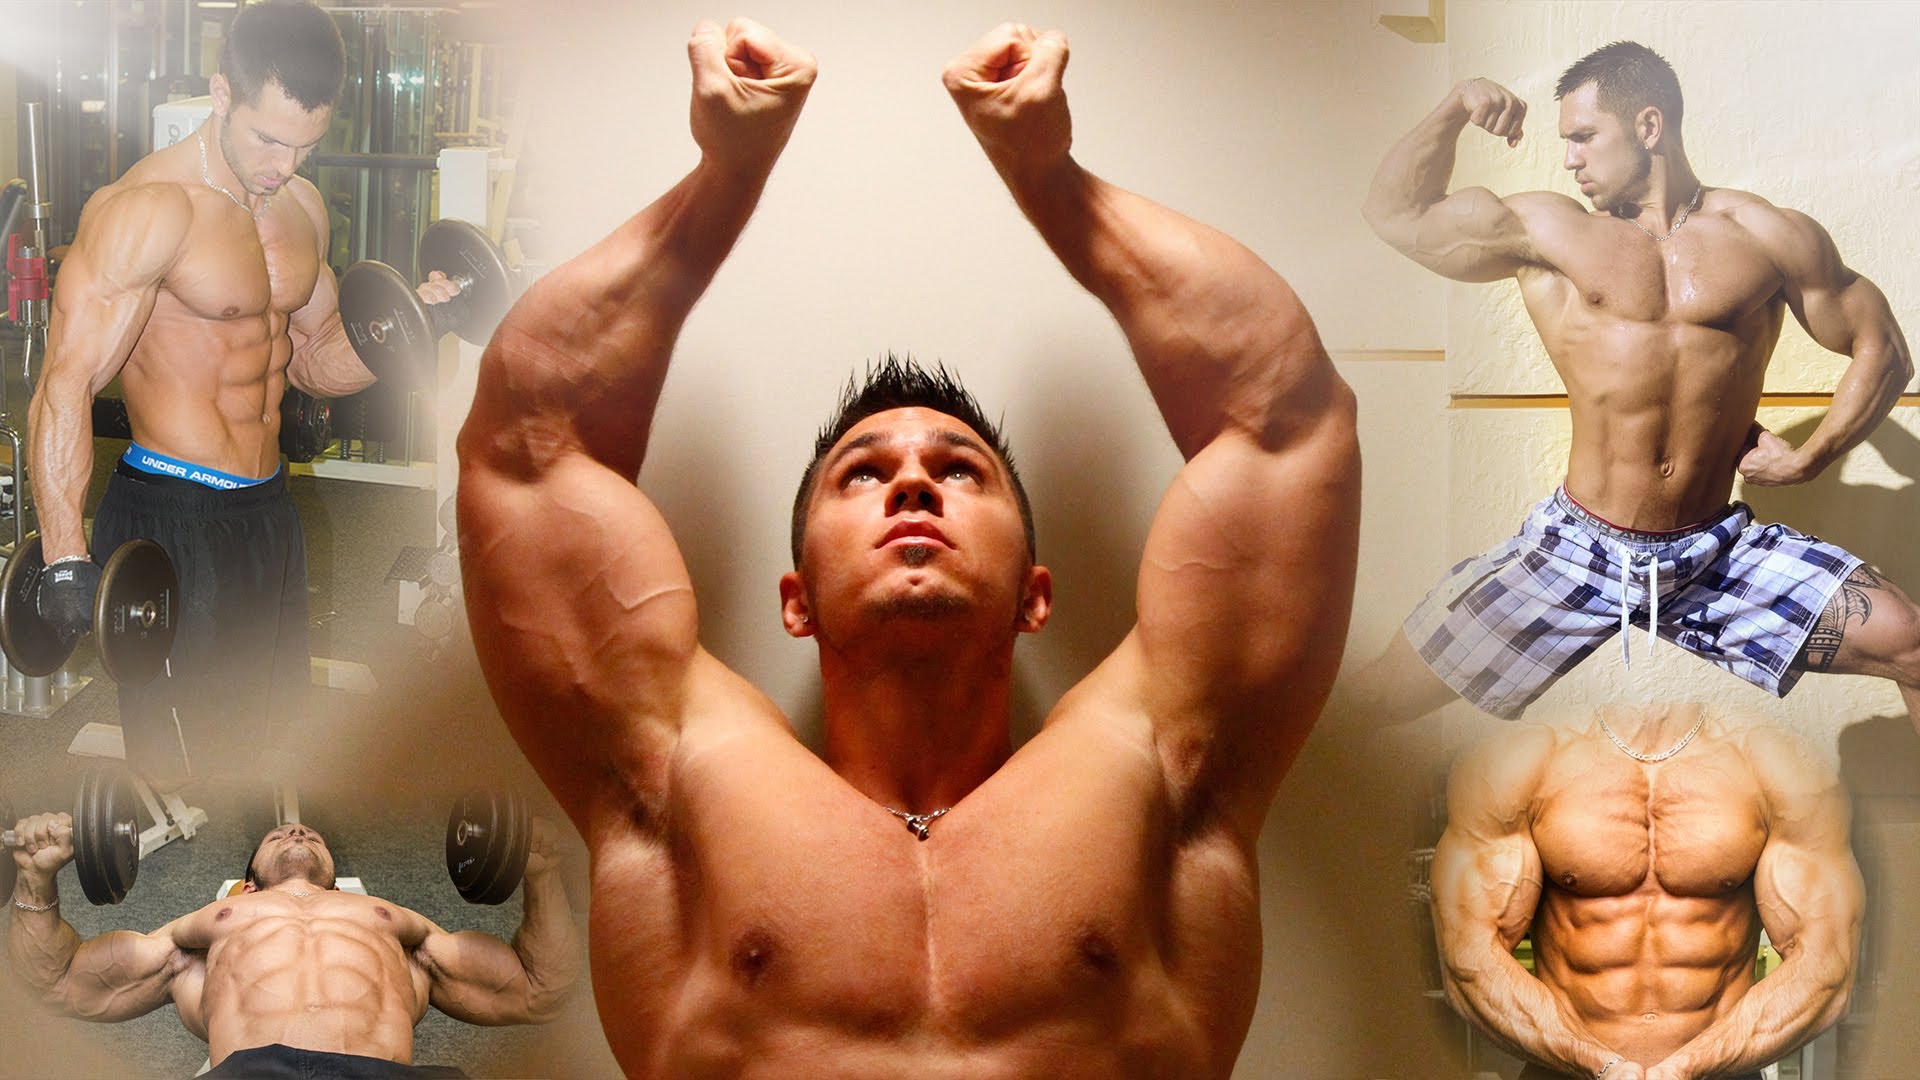 BEAST MODE - Epic Gym Bodybuilding Motivation - YouTube